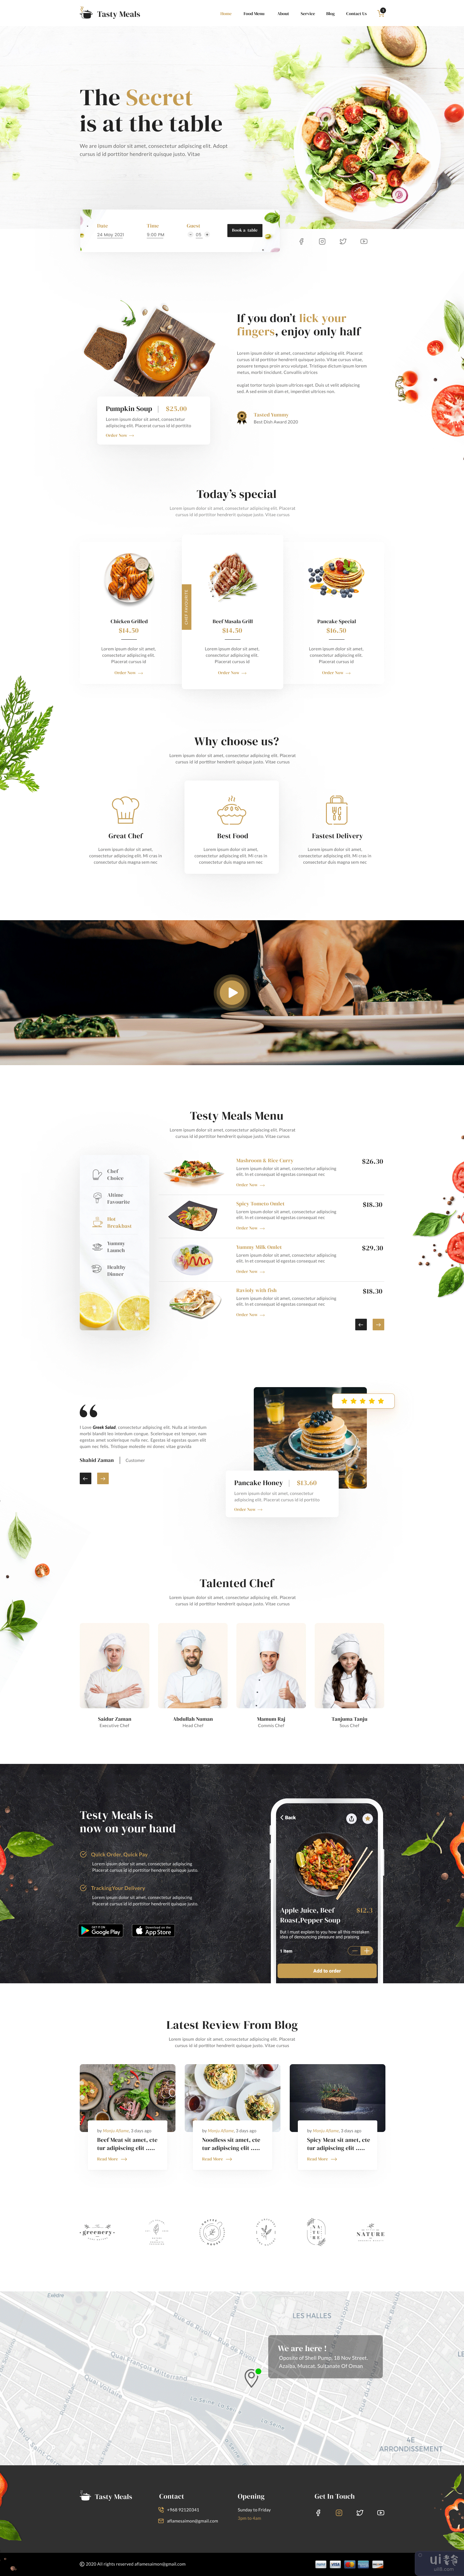 暴躁的饭菜 |餐厅登陆页面设计(Testy Meals | Restaurant Landing Page Design)插图